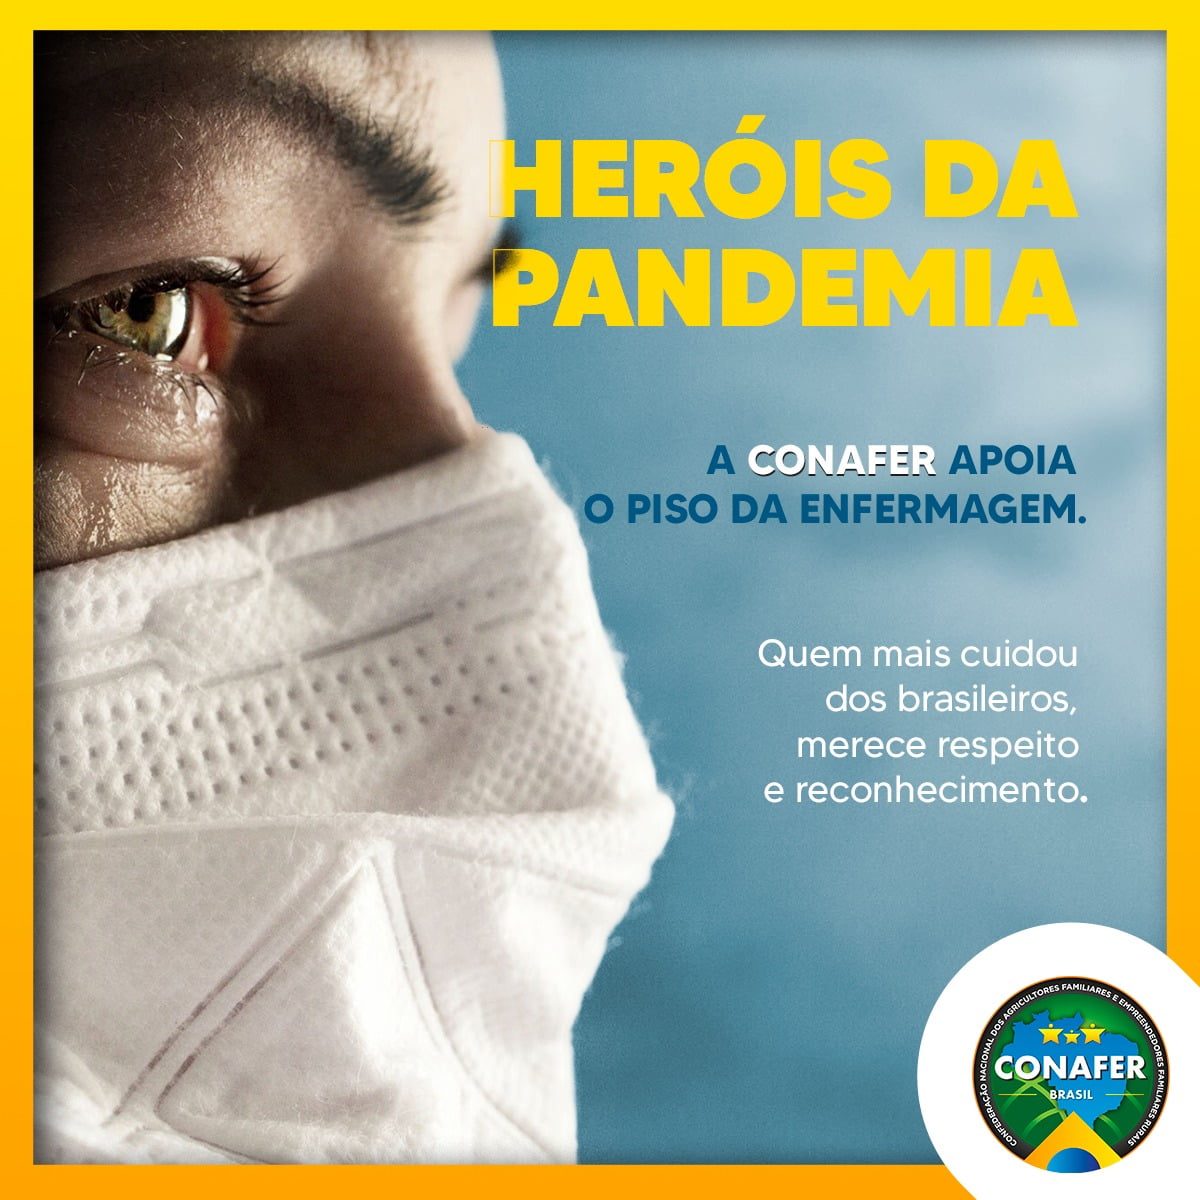 CONAFER SAÚDE: piso da enfermagem é respeito e reconhecimento aos heróis da pandemia